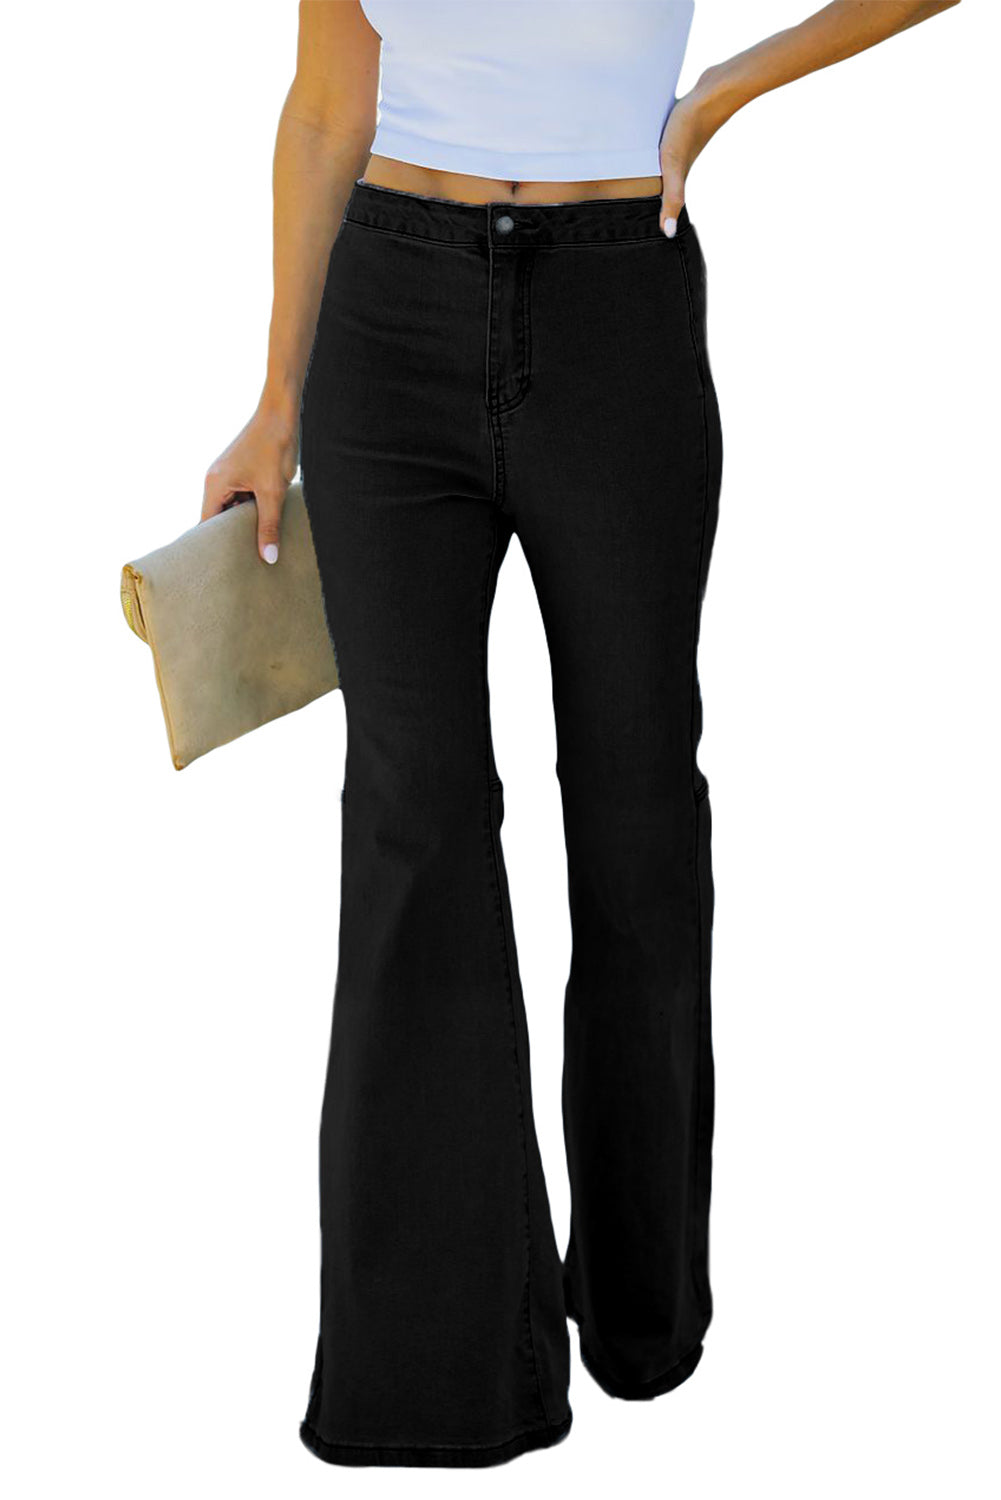 Black High Waist Pockets Bell Jeans Jeans JT's Designer Fashion